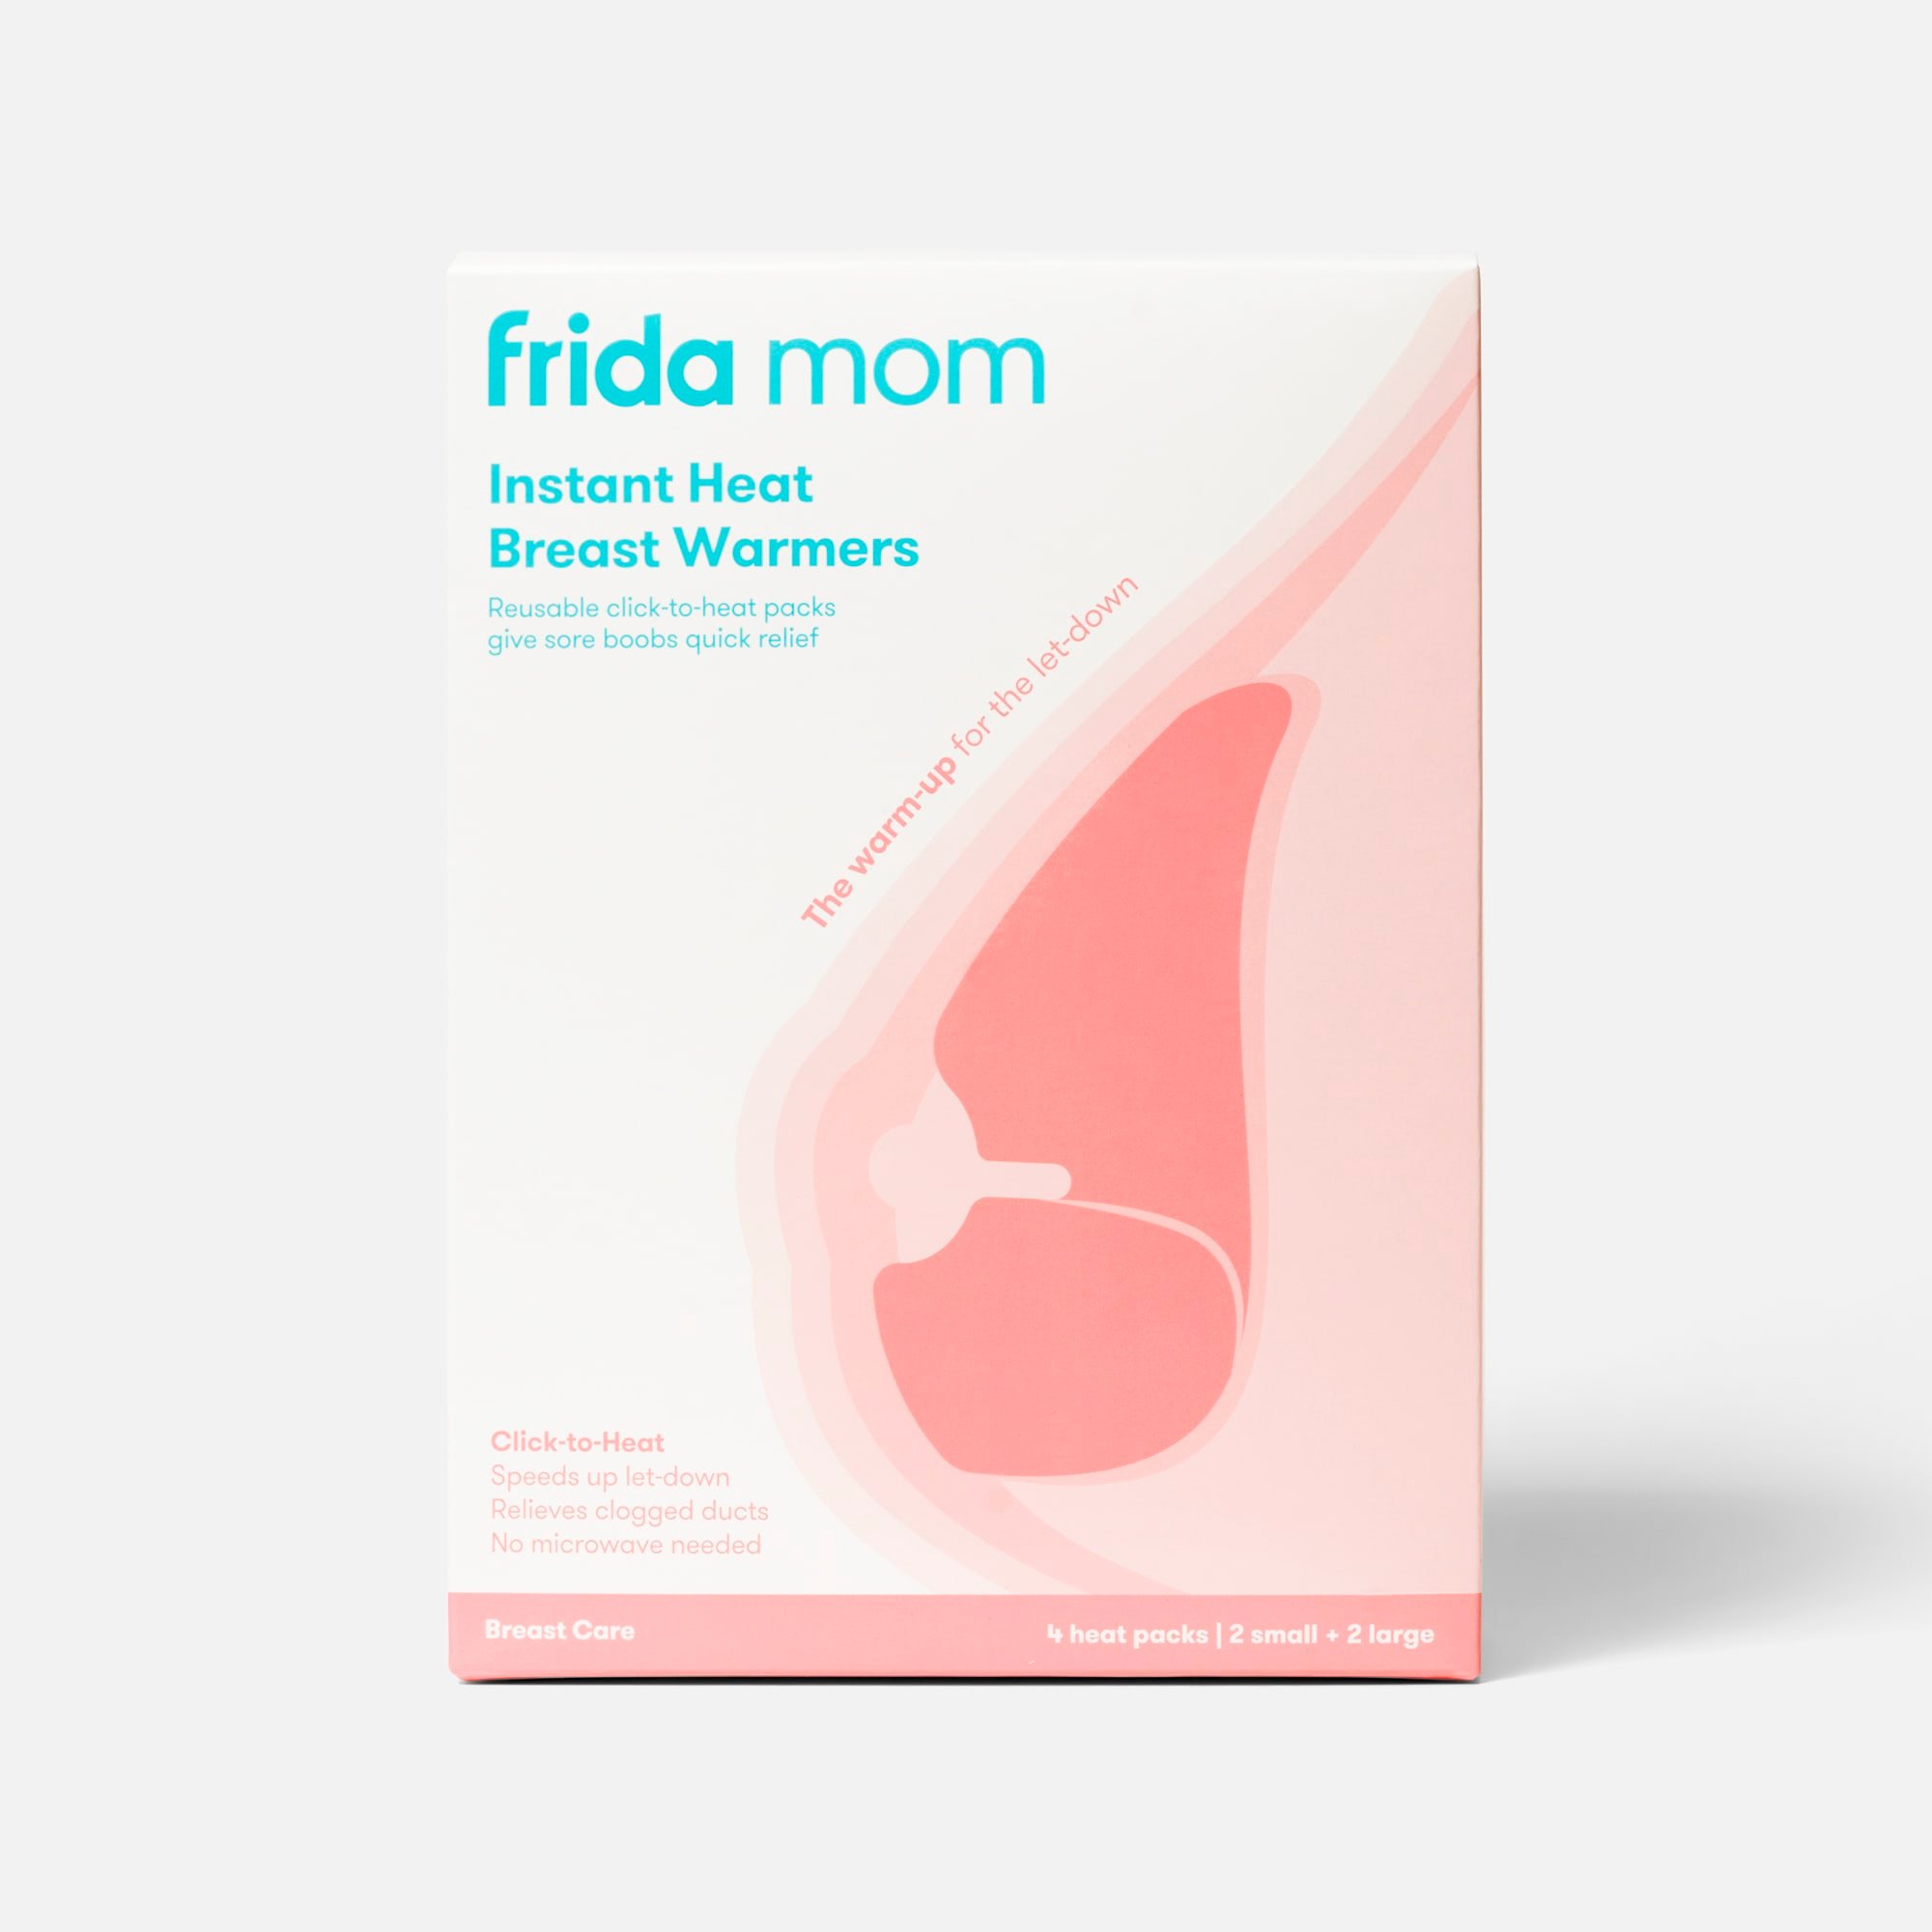 Frida Mom - Breast Mask for Hydration